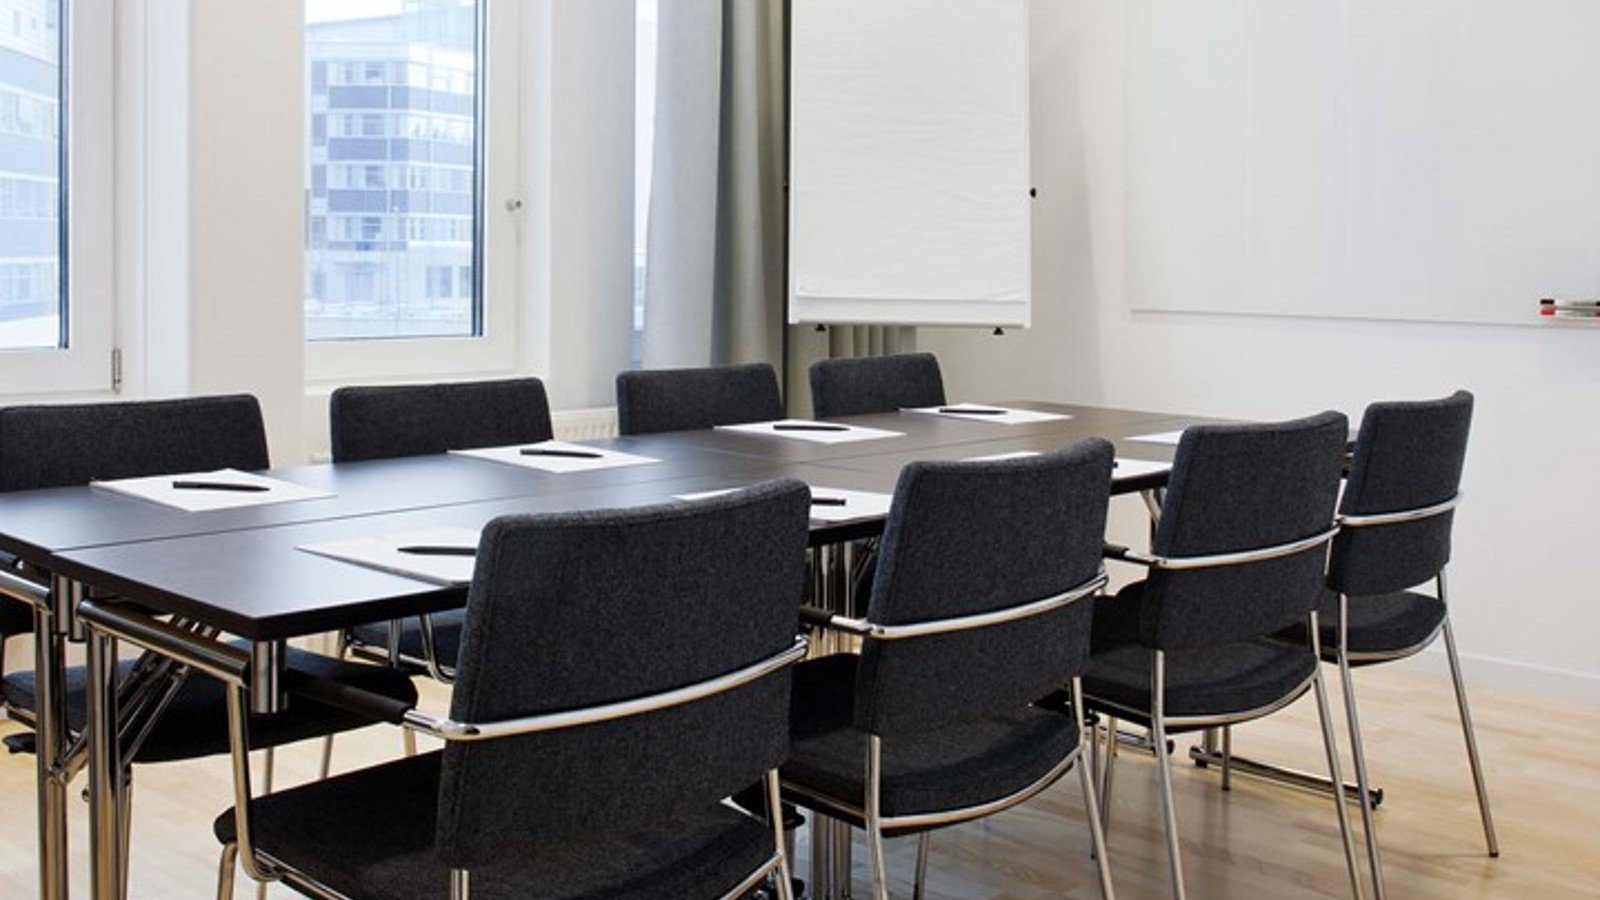 Konferensrum med styrelsesittning, brund bord, mörka stolar, vita väggar